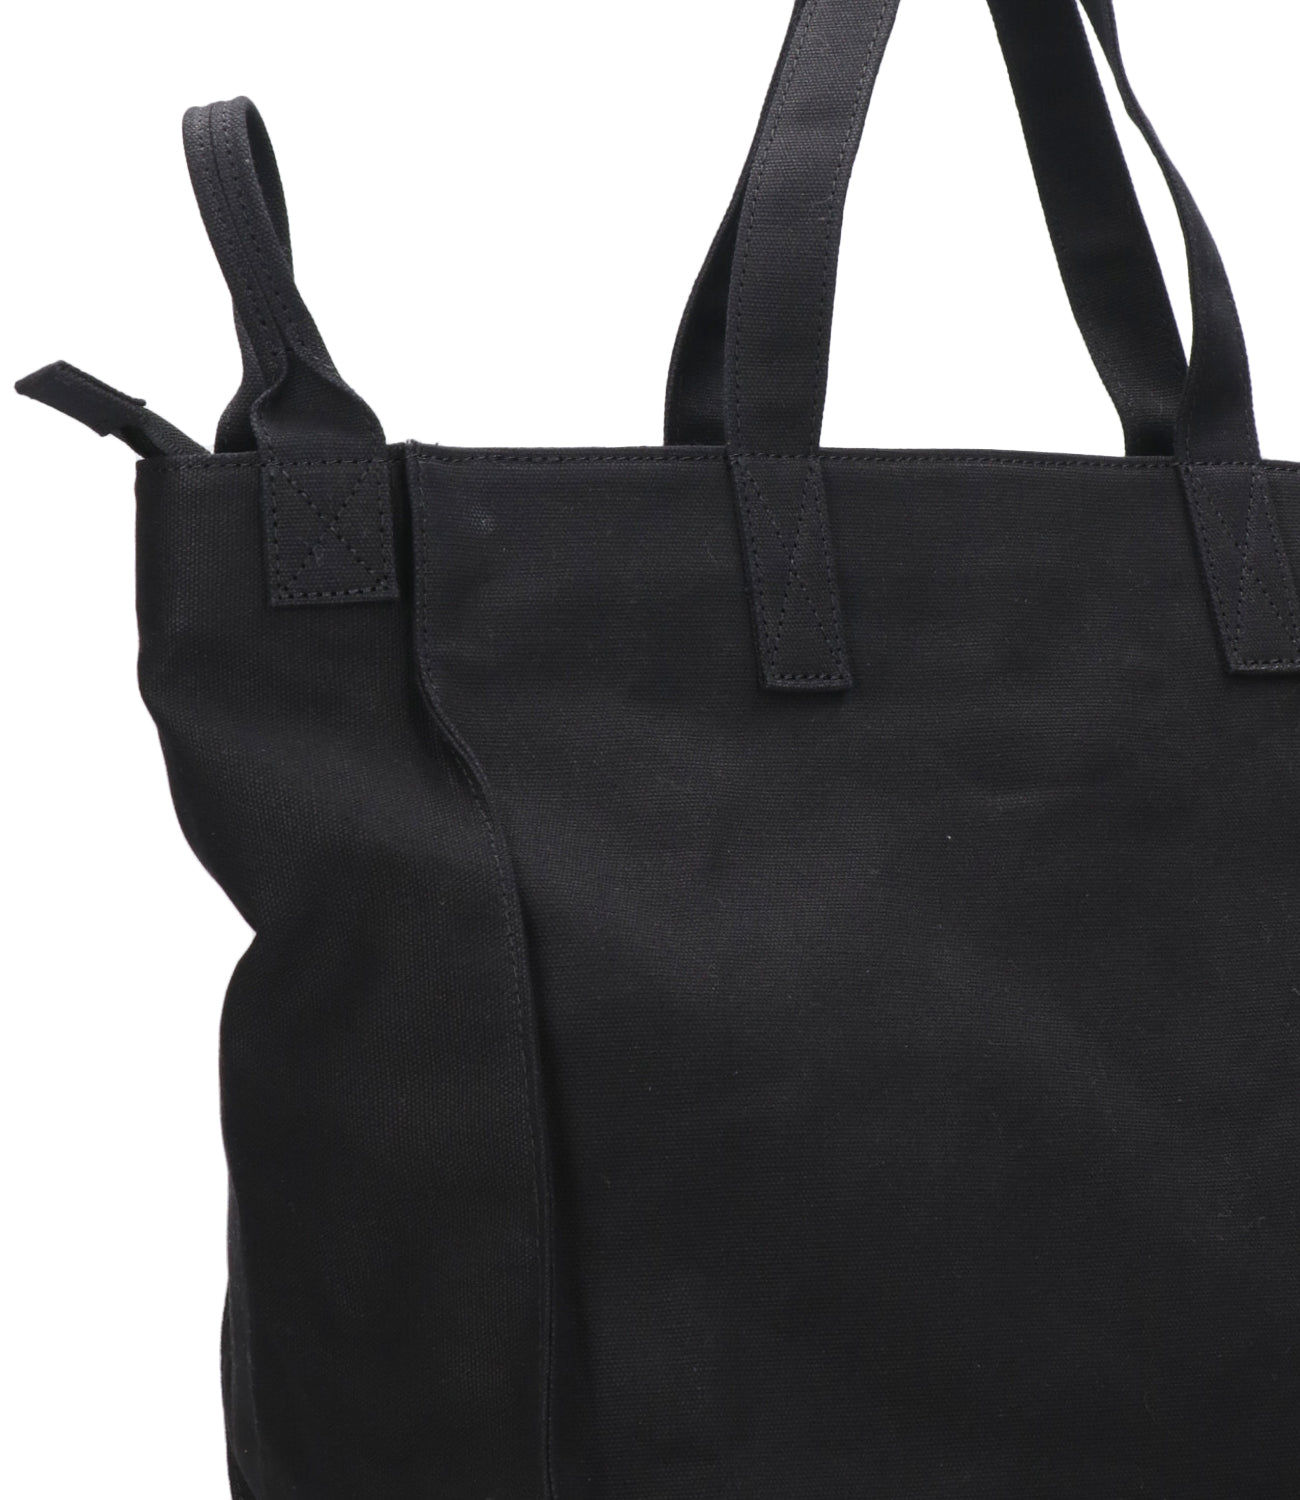 N 21 Kids | Shopping Bag Black